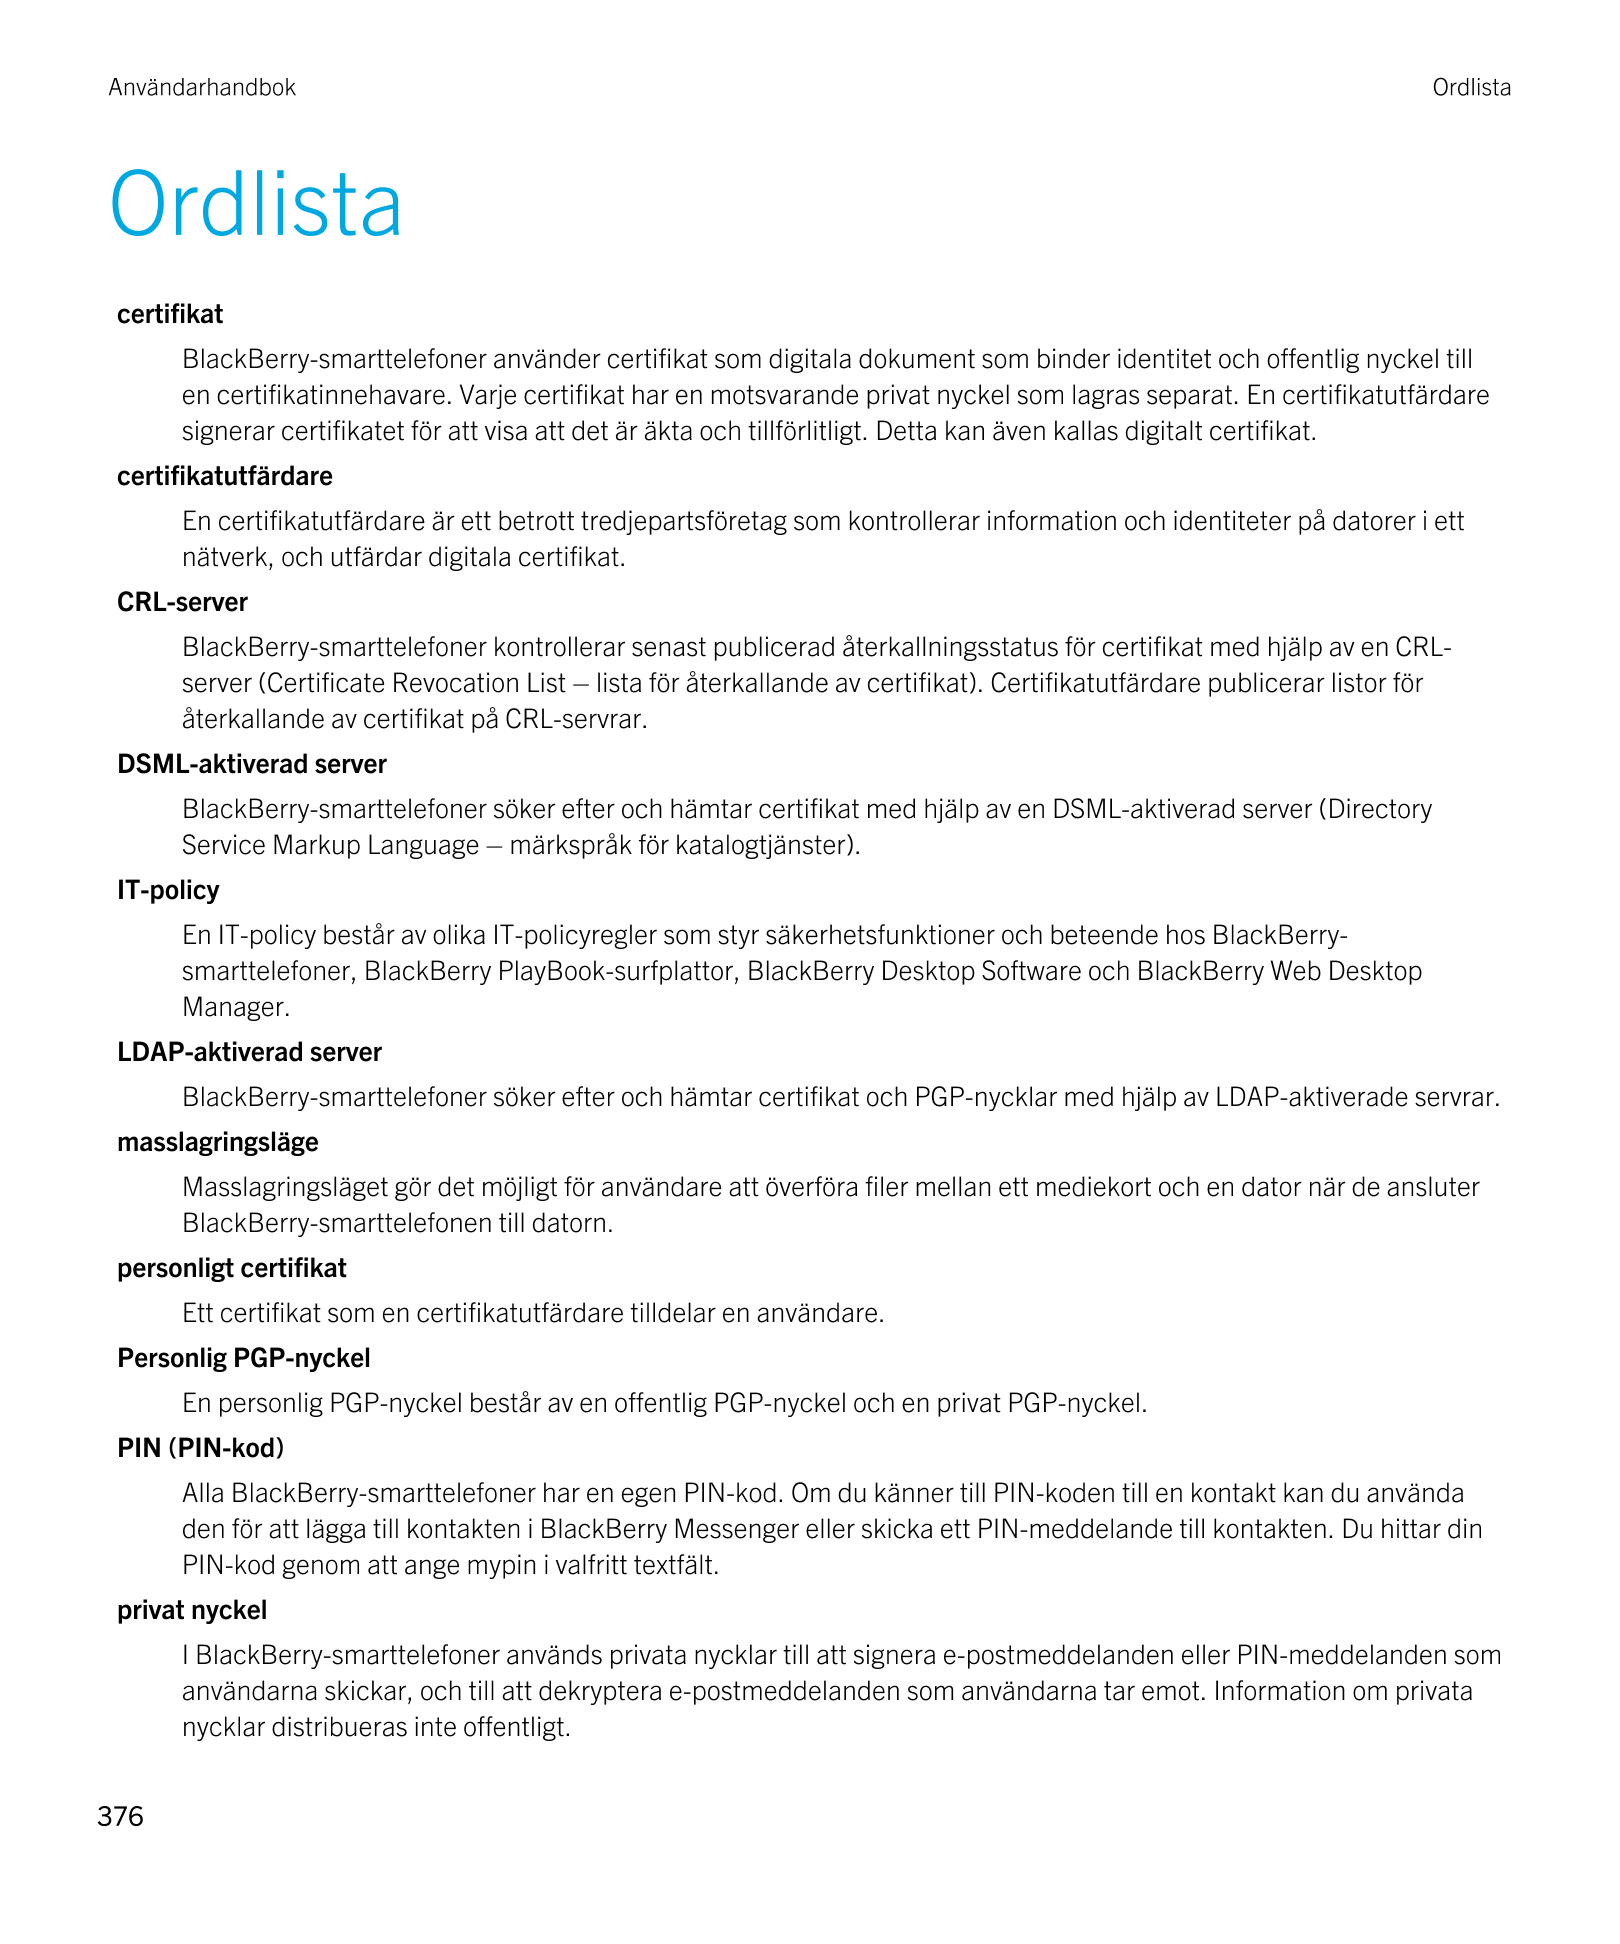 Användarhandbok Ordlista
Ordlista
certifikat
BlackBerry-smarttelefoner använder certifikat som digitala dokument som binder iden